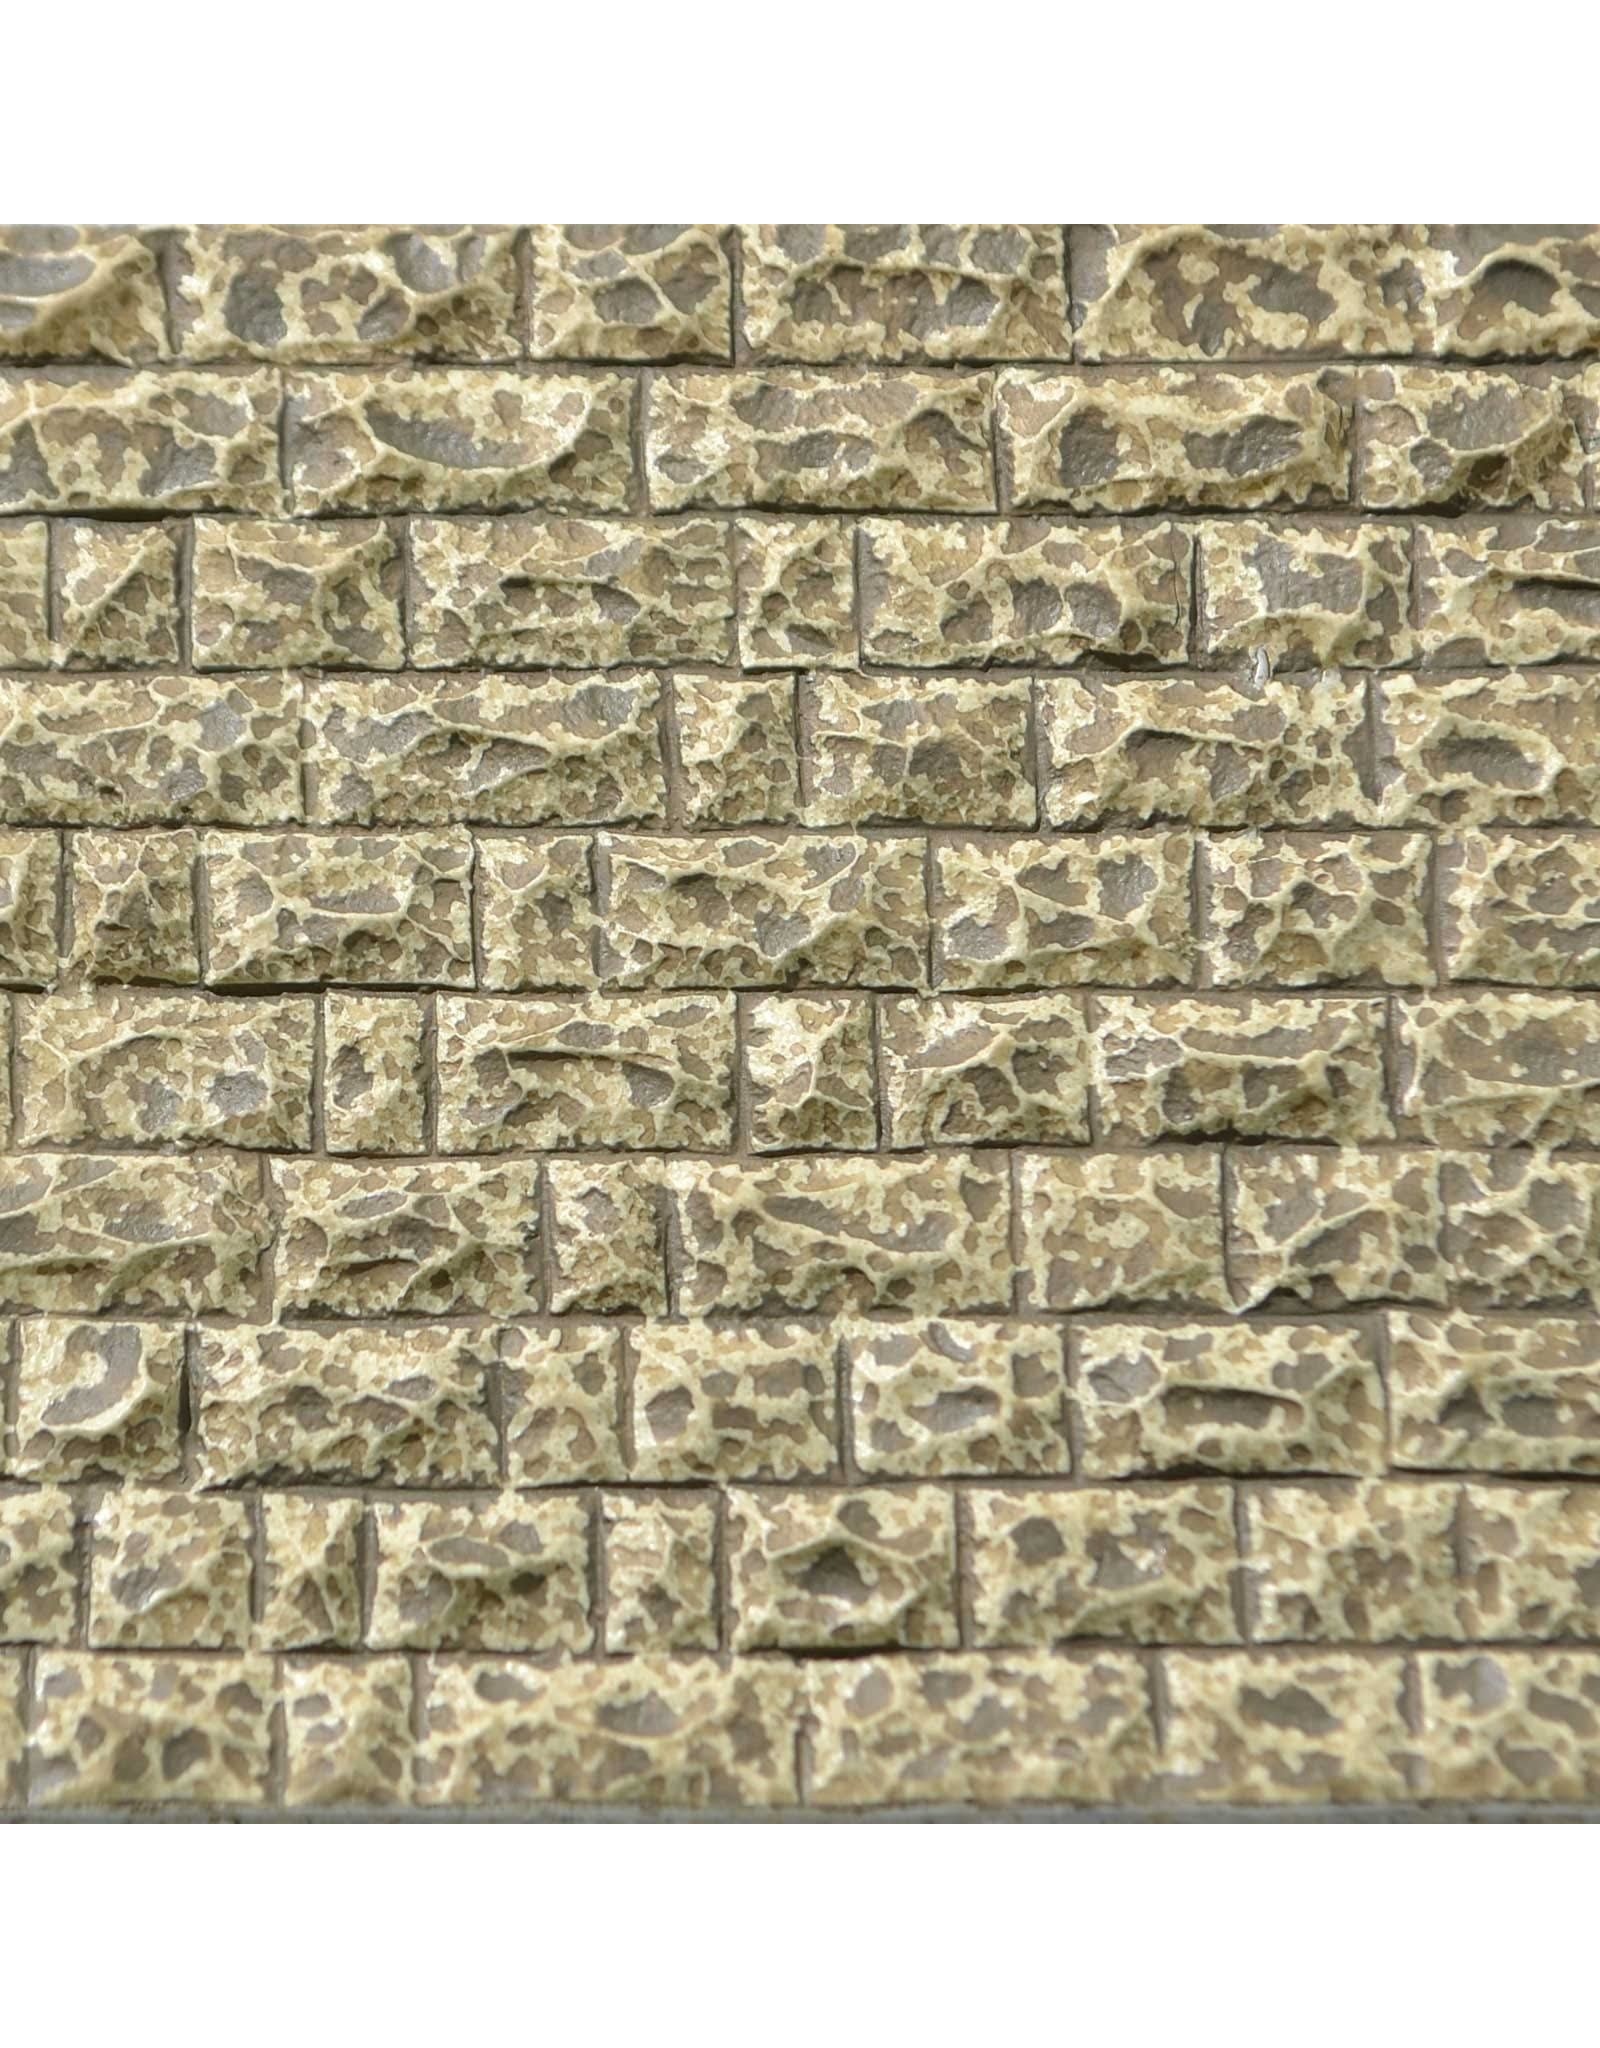 Chooch Large Cut Stone Wall #8264